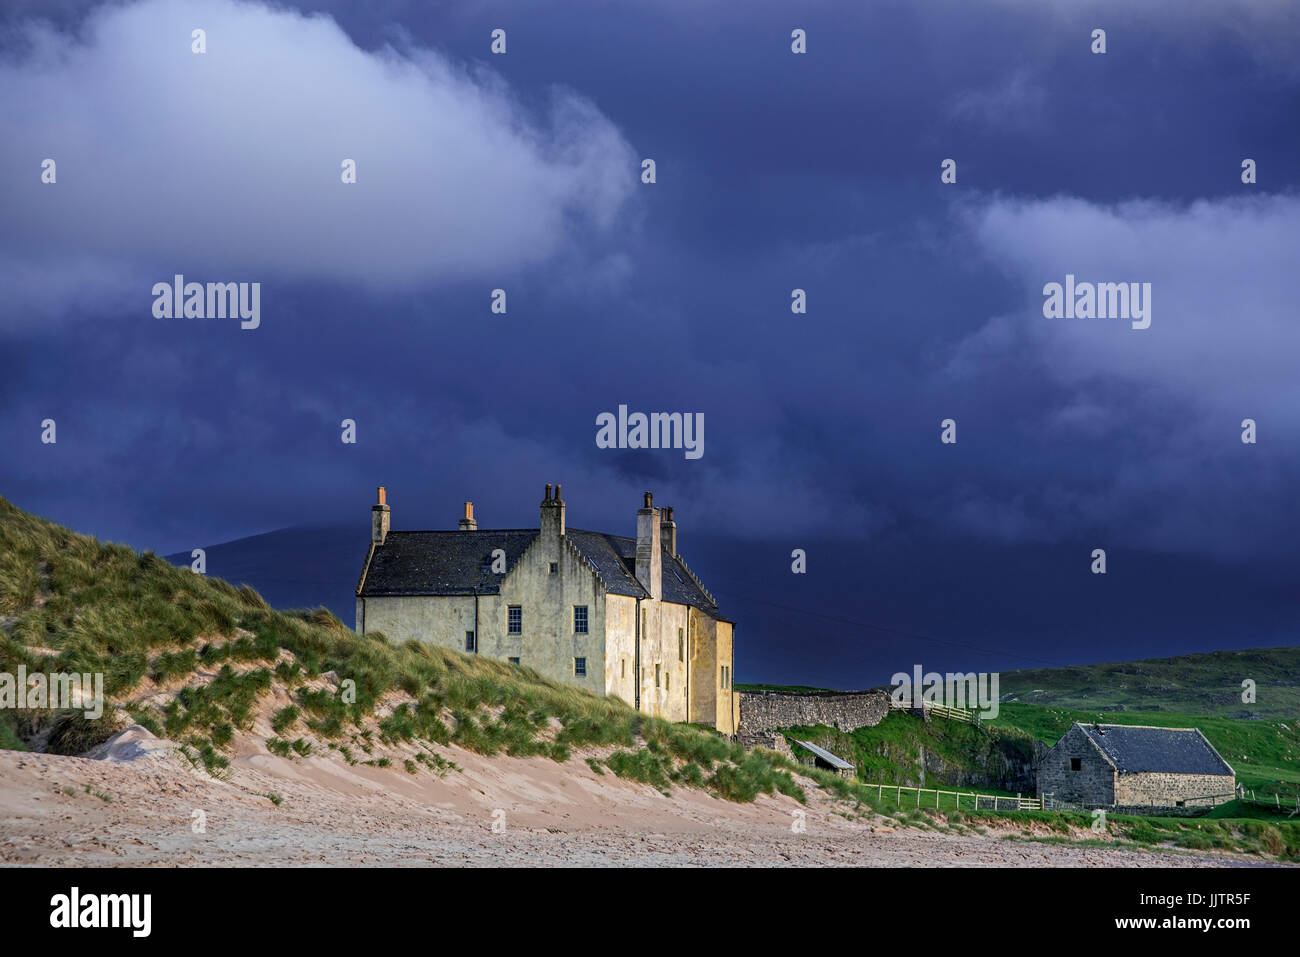 Dark nuvole di pioggia in rotolamento sulla casa Balnakeil, del XVIII secolo, vicino a Durness, Sutherland, Highlands scozzesi, Scozia Foto Stock